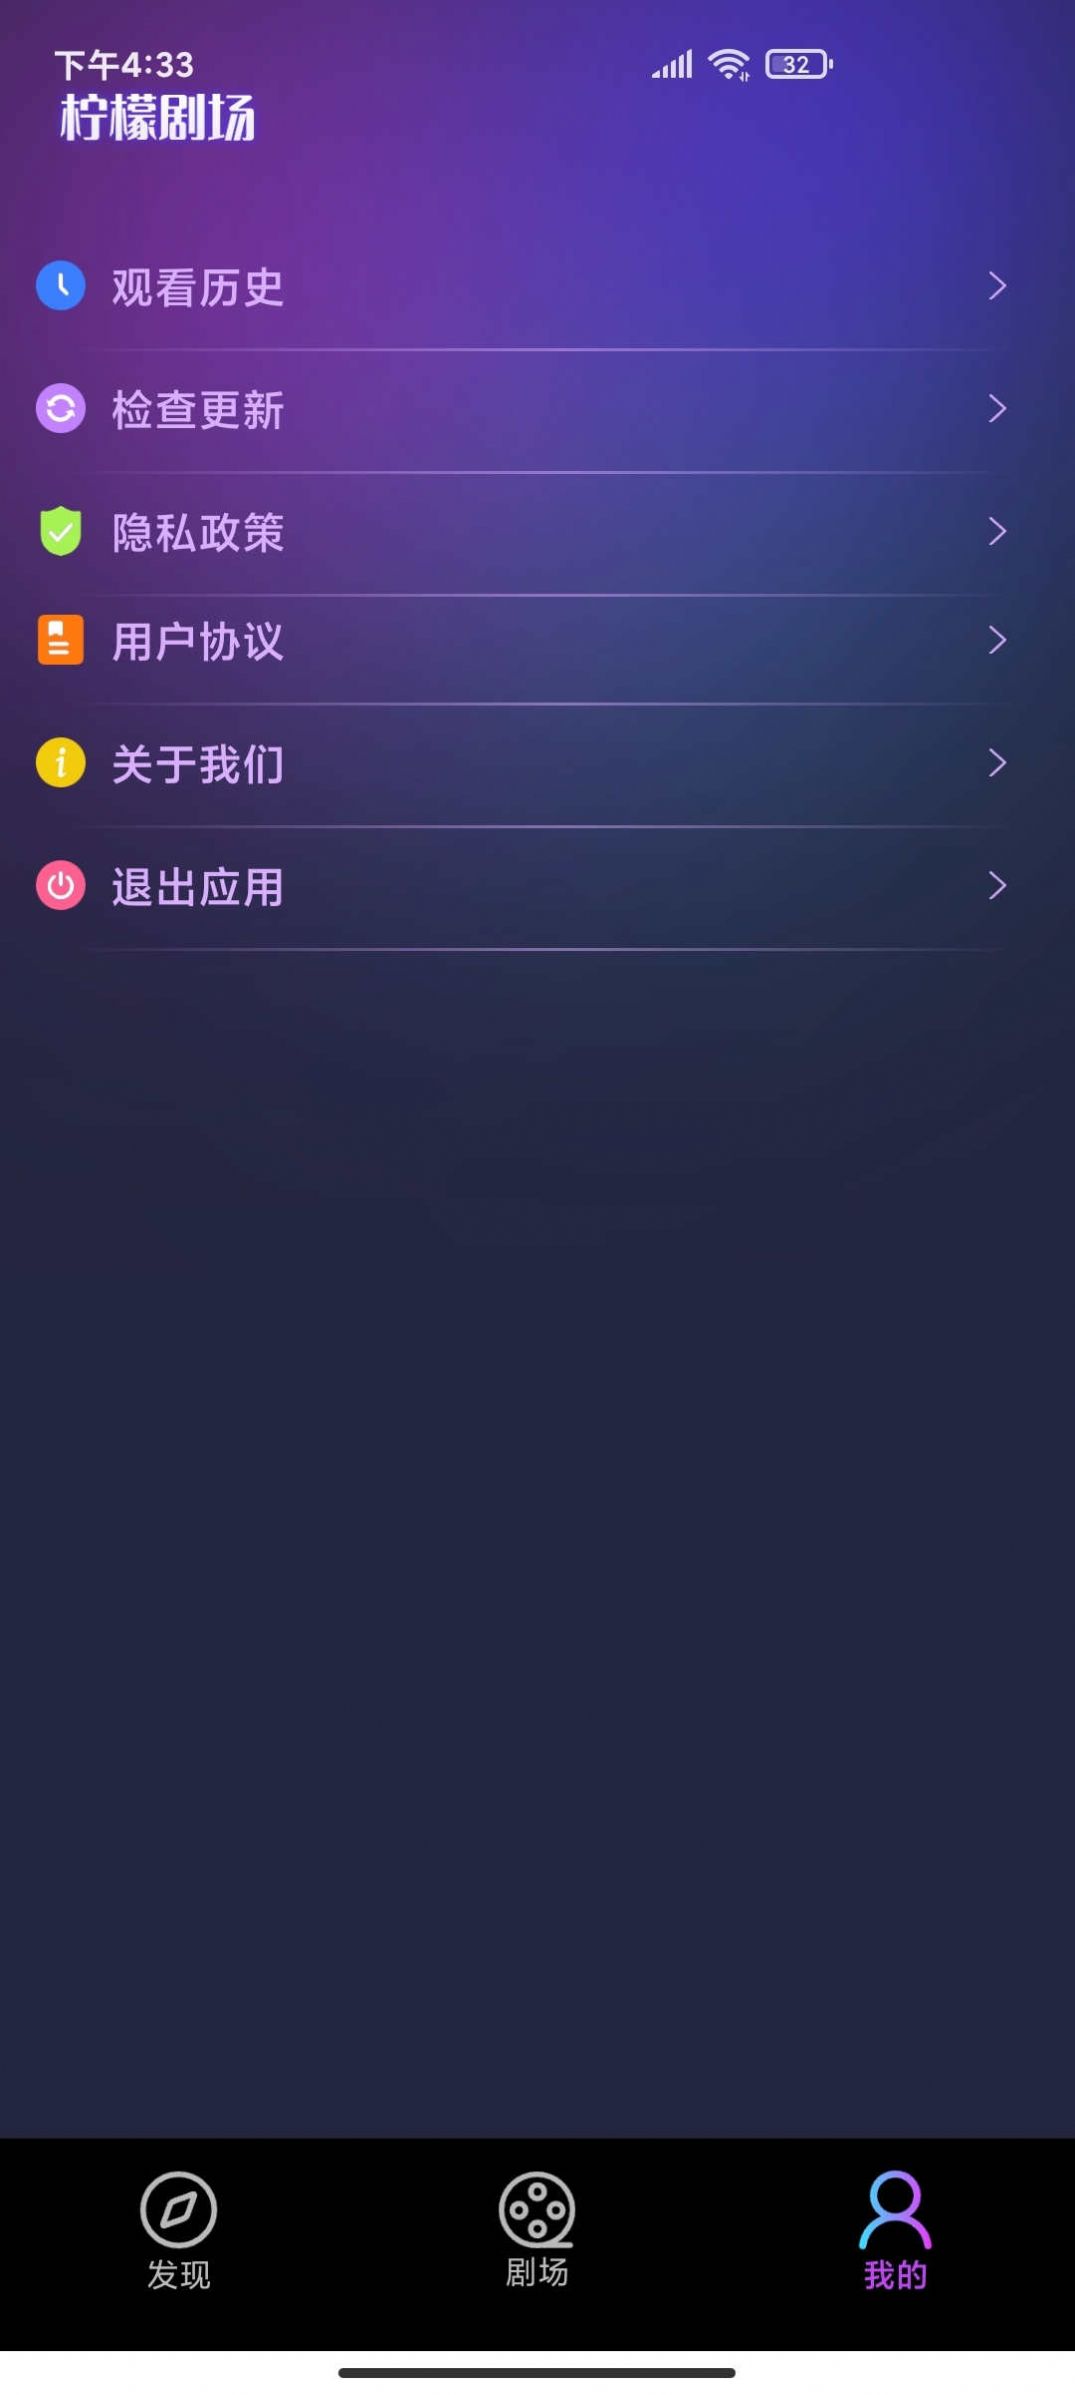 柠檬剧场app